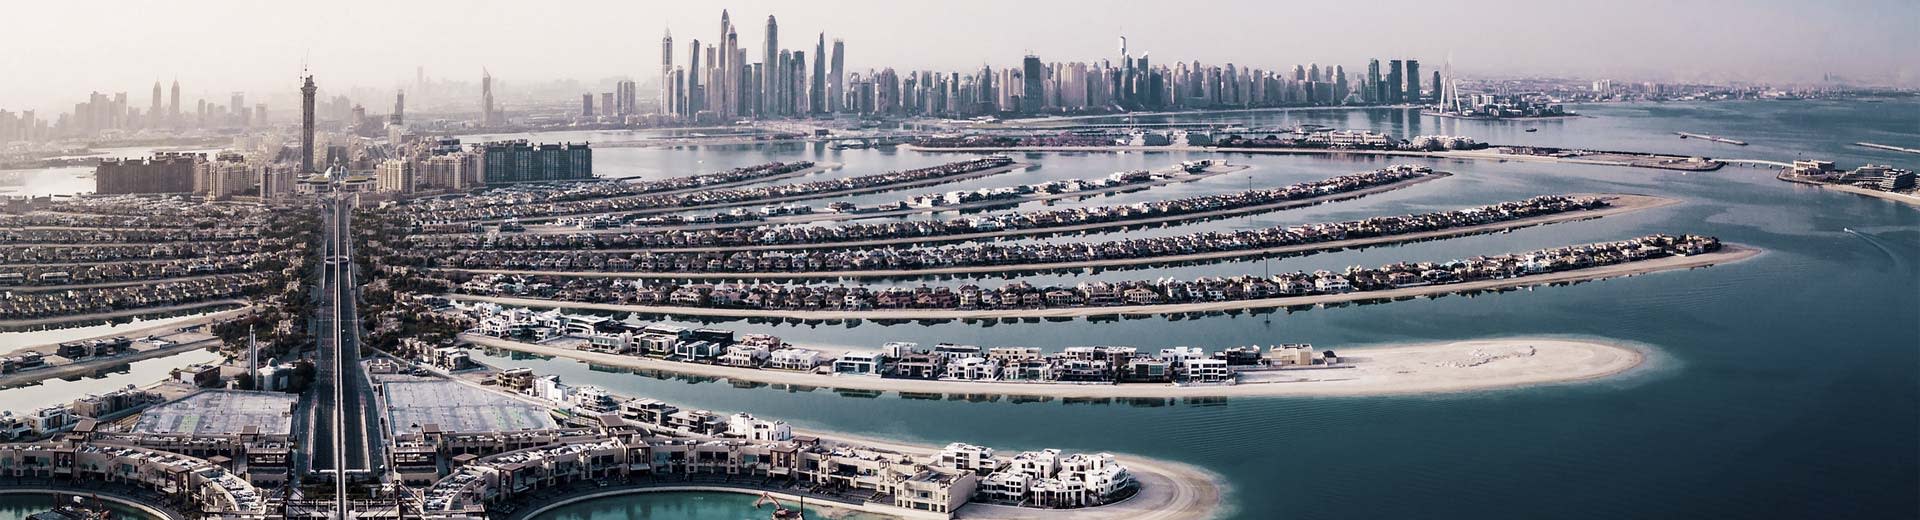 Dubais Palm Jumeirah, künstliche Inseln in Form von Palmwedeln, mit der Skyline des Kerns der Innenstadt im Hintergrund.